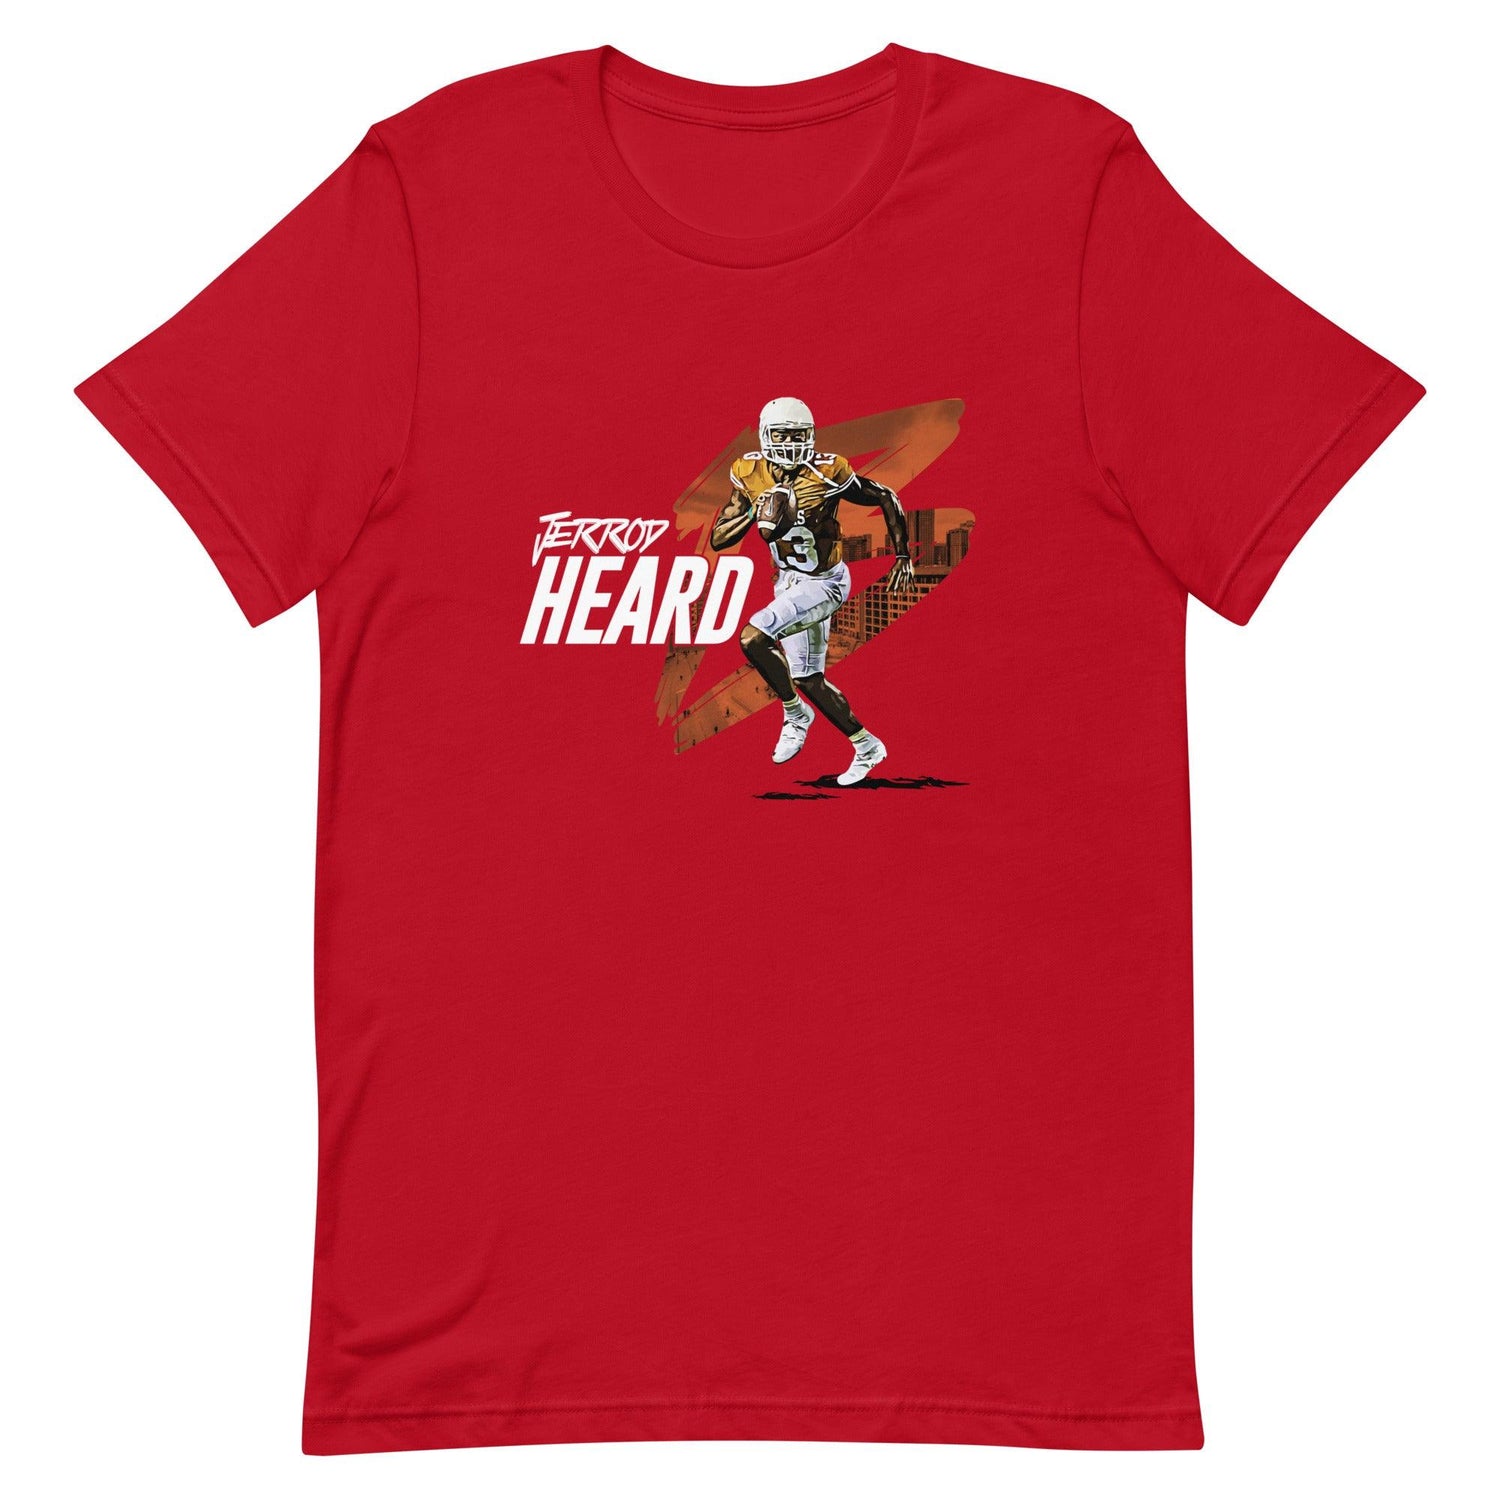 Jerrod Heard "Gameday" t-shirt - Fan Arch